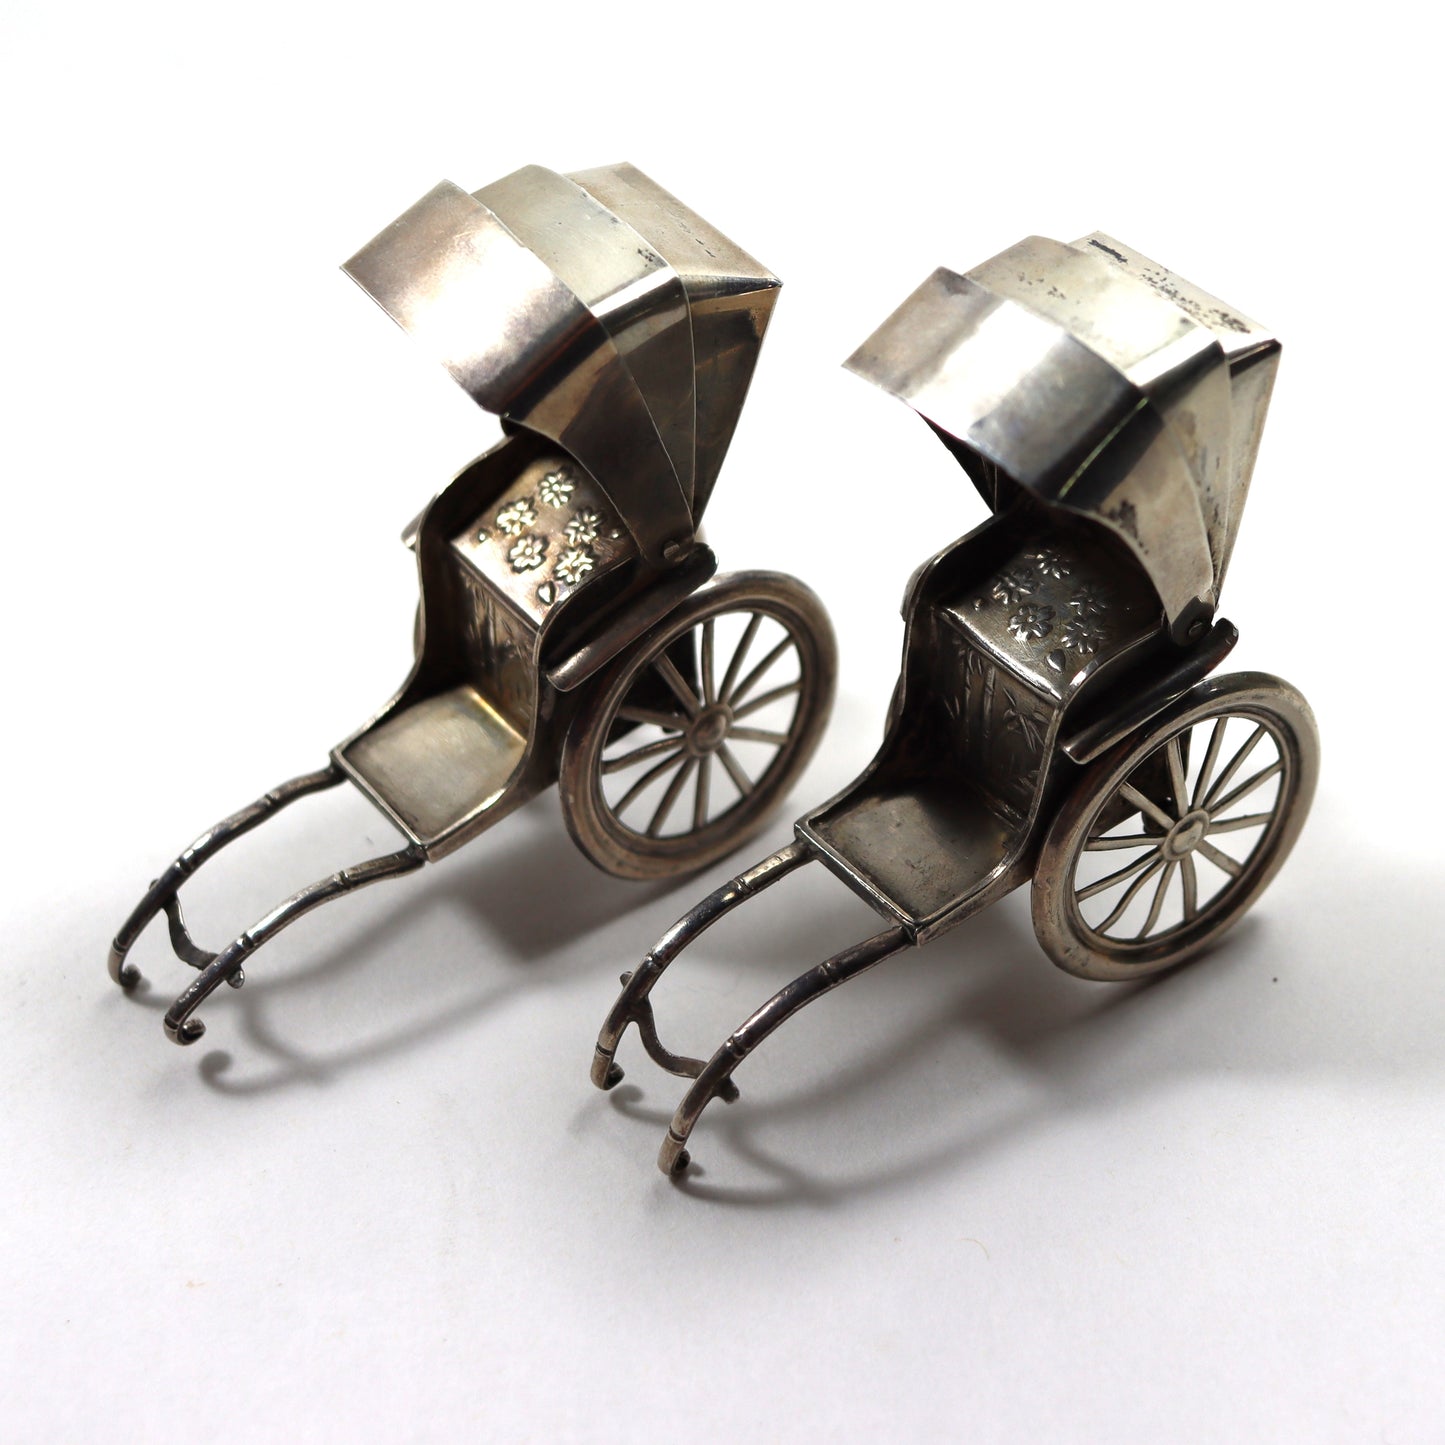 Vintage Japanese Novelty Sterling Silver Rickshaw Carriage Miniature Salt & Pepper